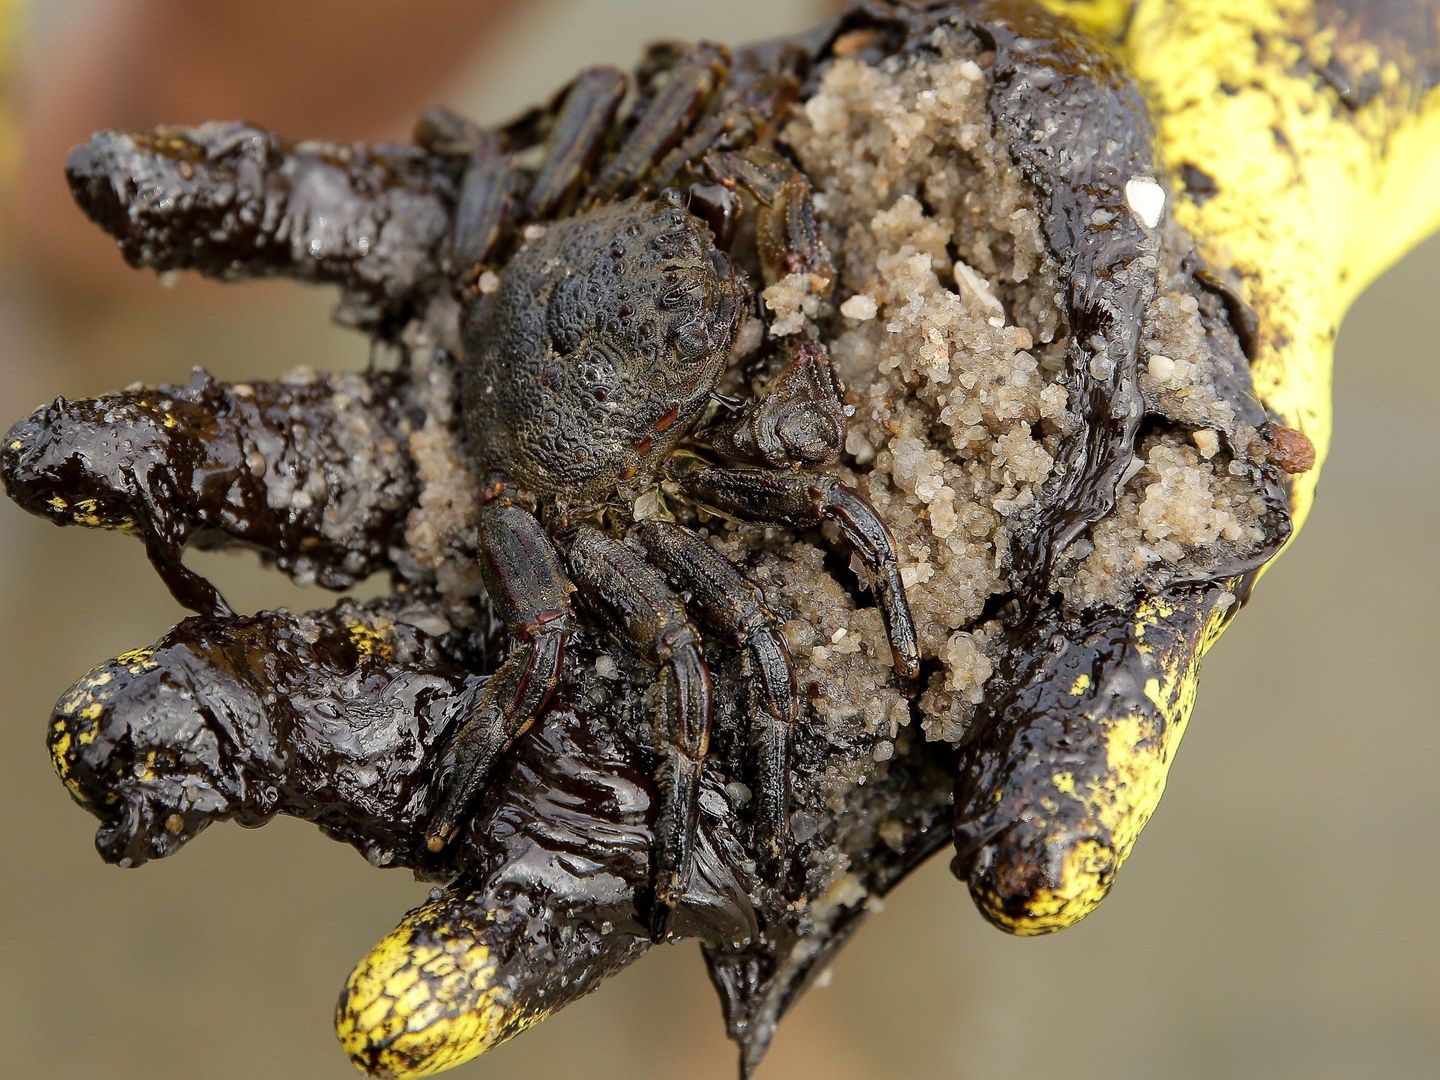 Un voluntario muestra un cangrejo atrapado en el petróleo del vertido que ha afectado una amplia zona costera de Brasil. (EFE)